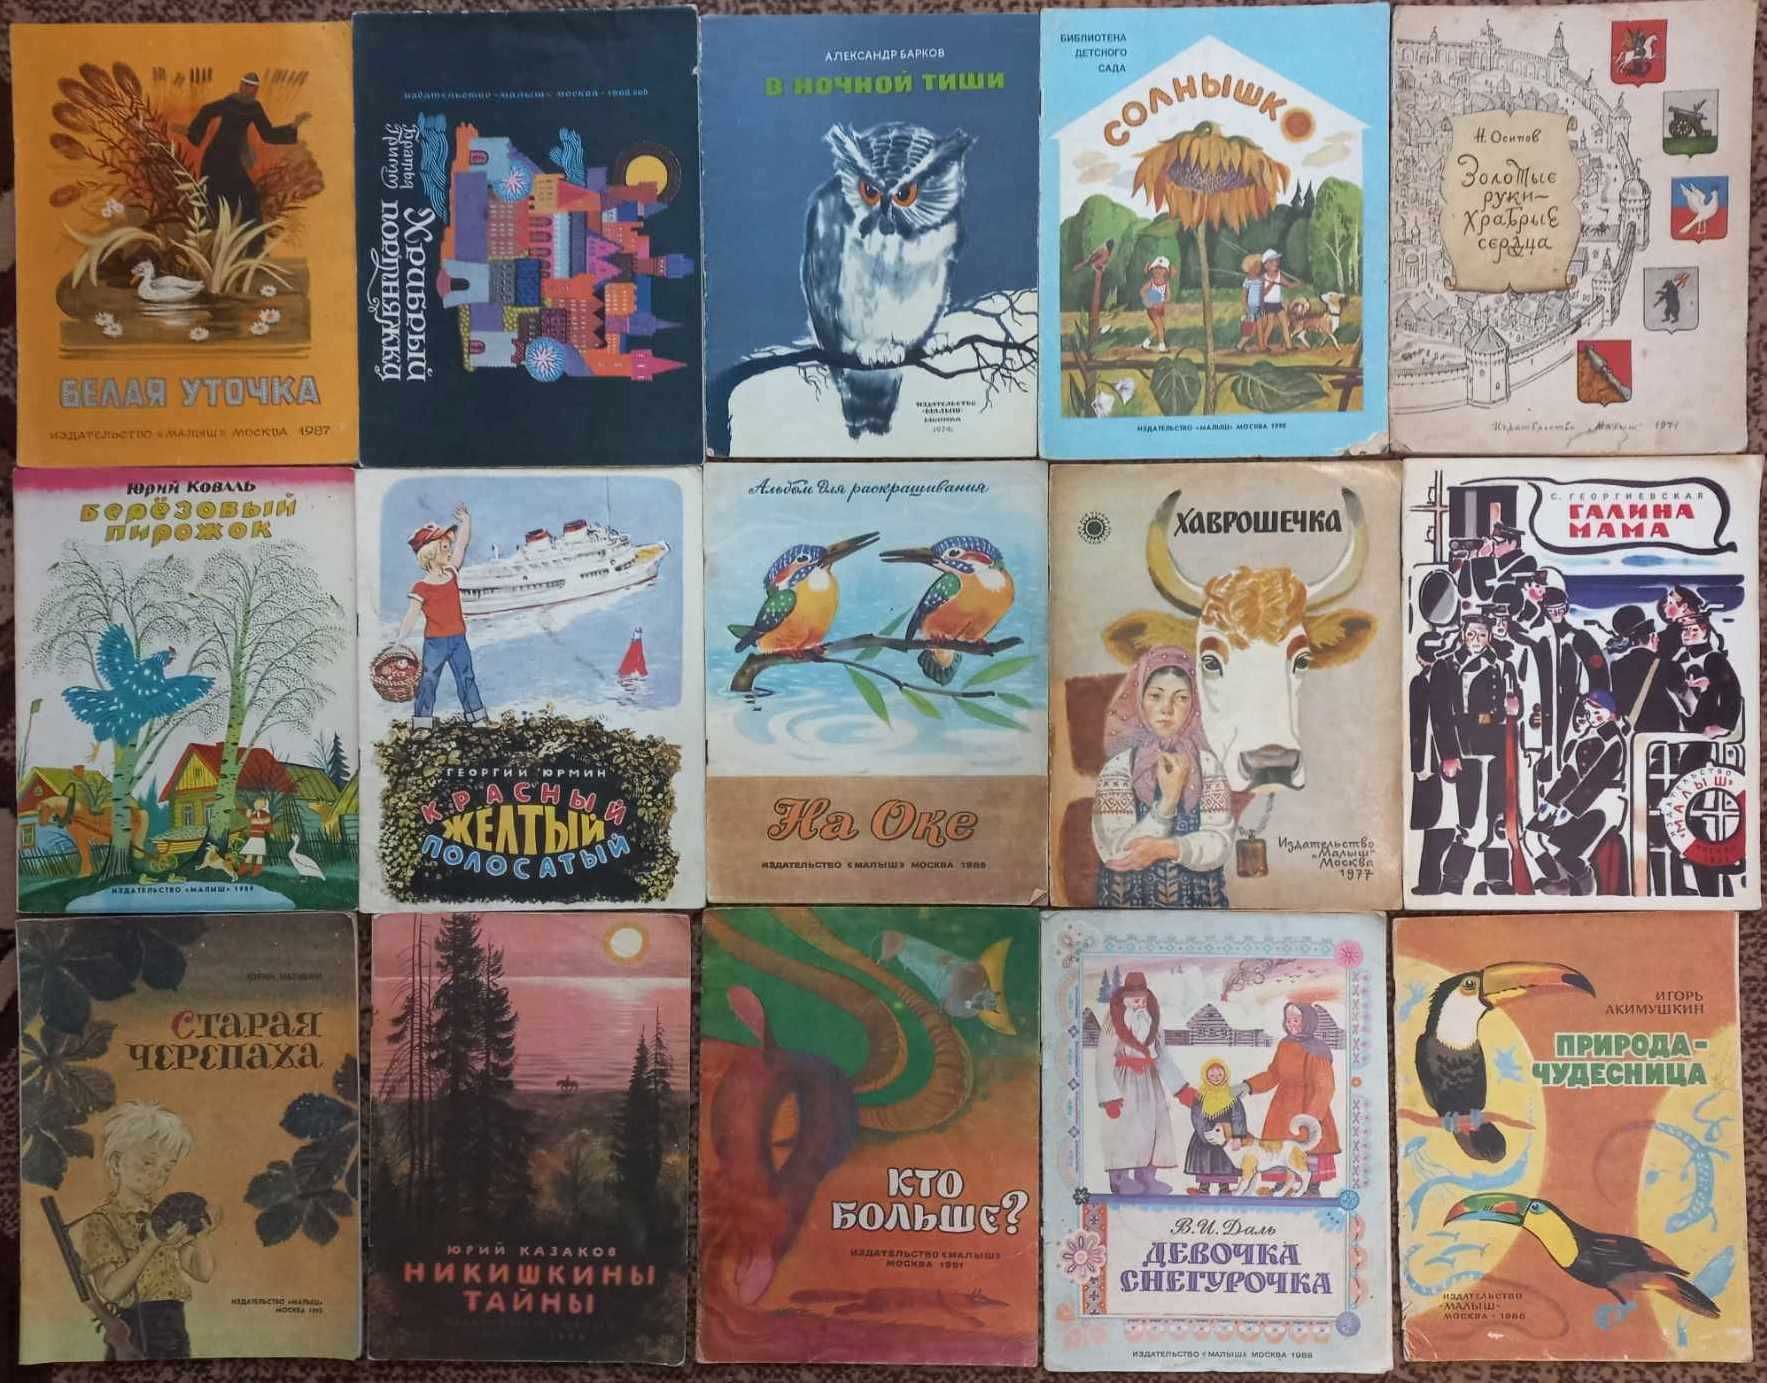 Книжки дитячі тоненькі детские тонкие СССР издательства МАЛЫШ